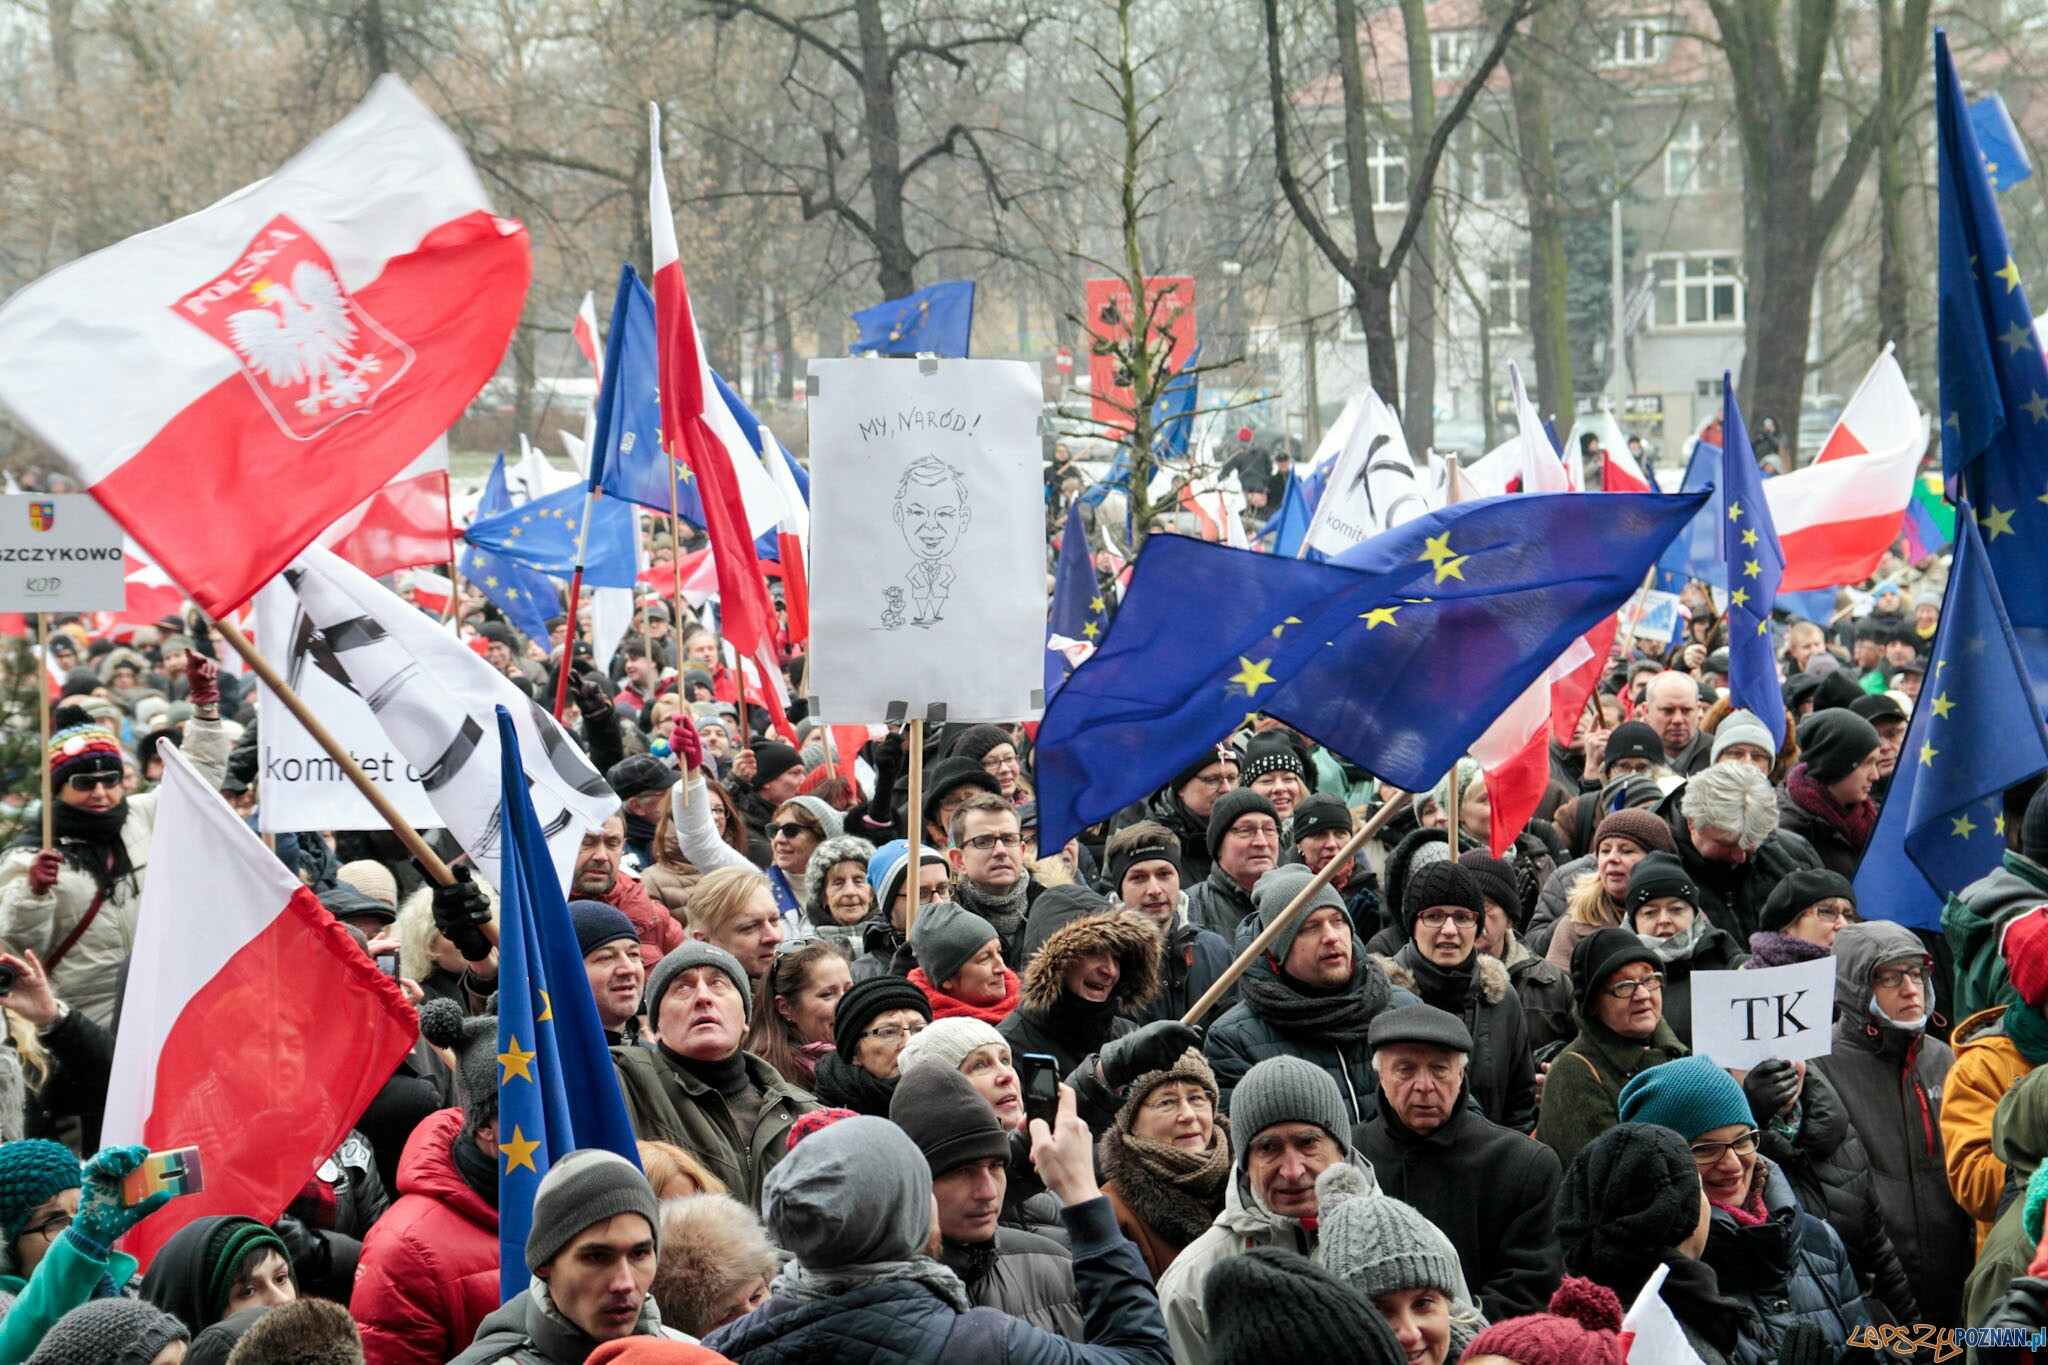 Marsz "W obronie Twojej wolności" - Poznań 23.01.2016 r.  Foto: LepszyPOZNAN.pl / Paweł Rychter